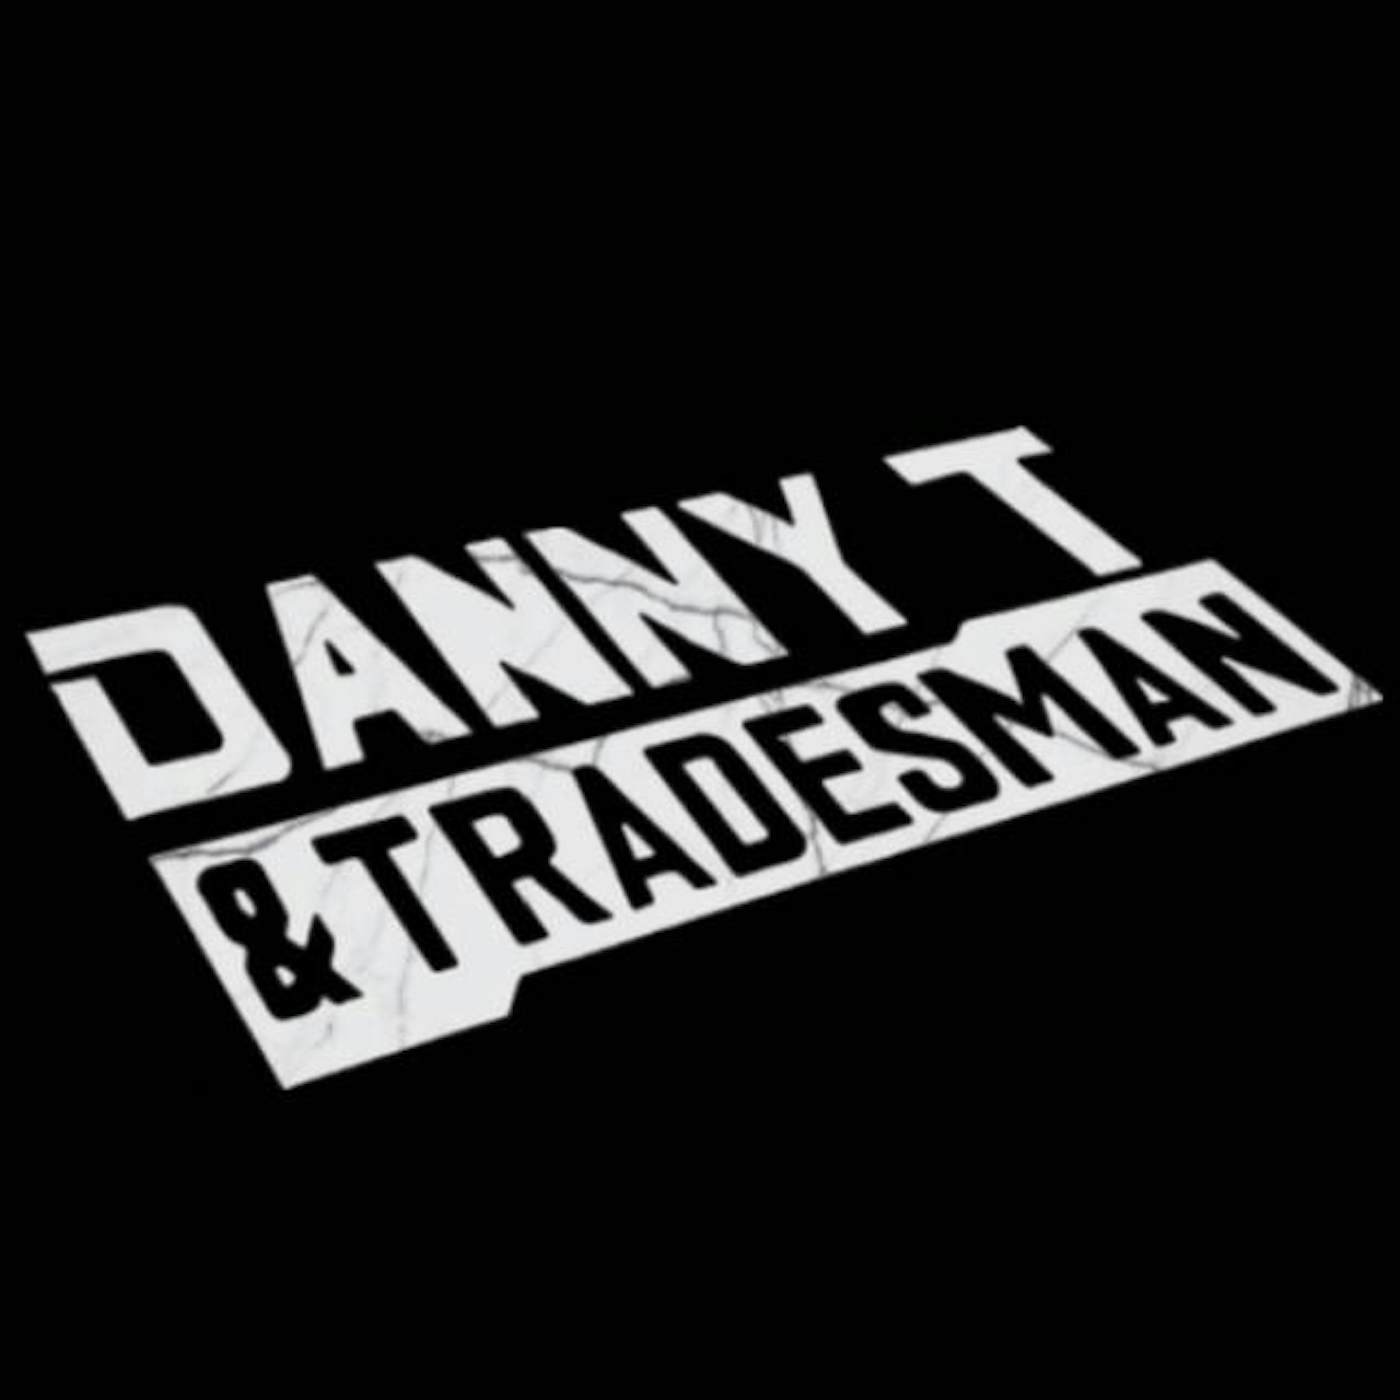 Danny T & Tradesman